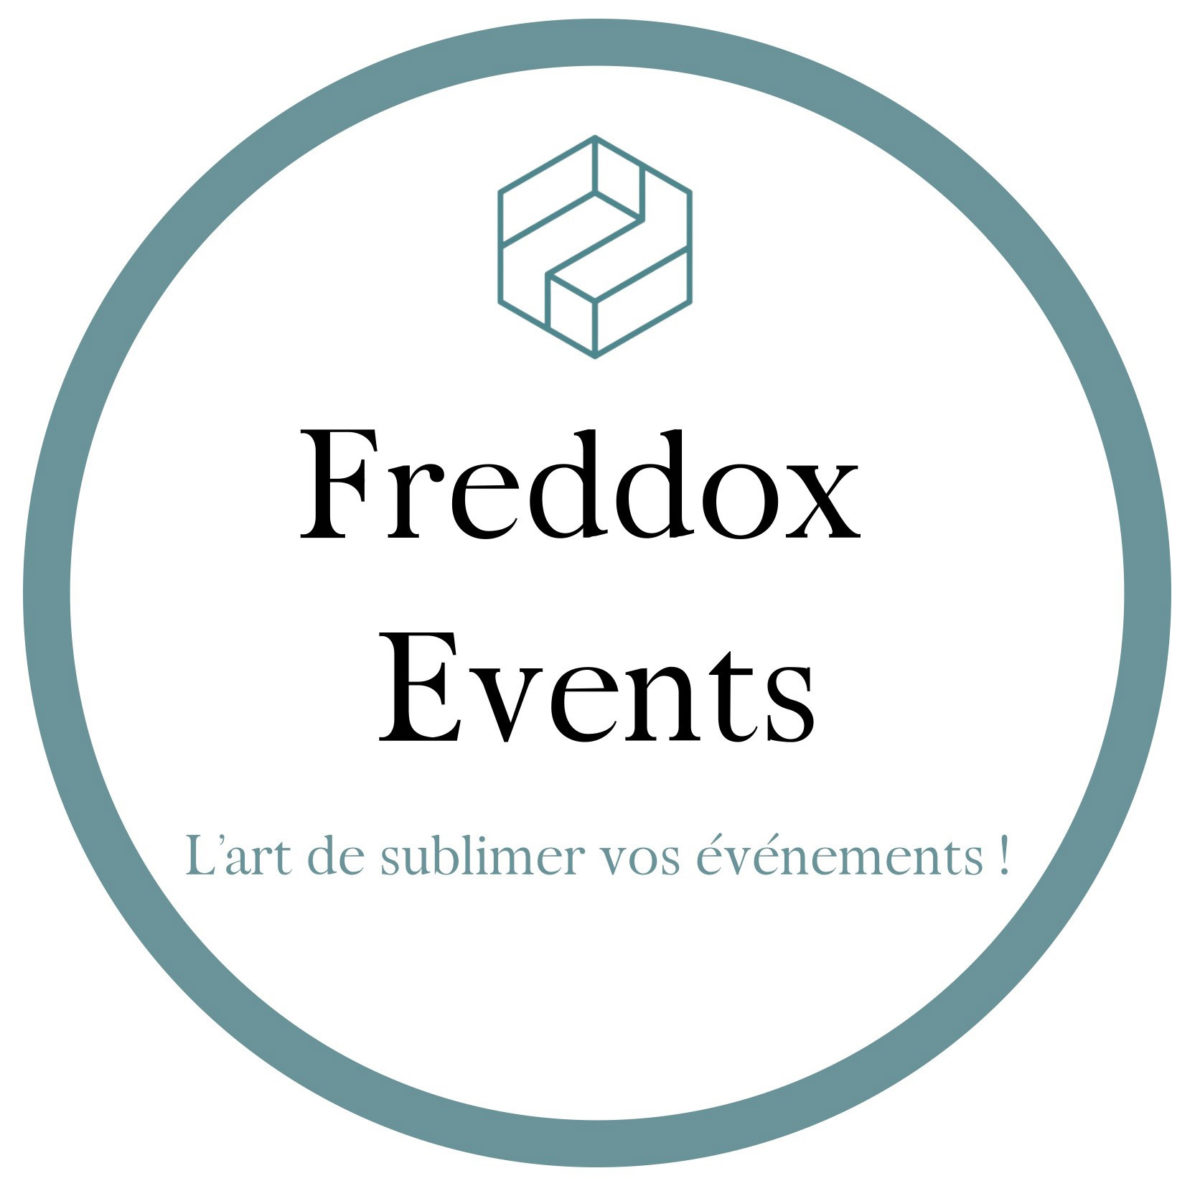 Freddox Events